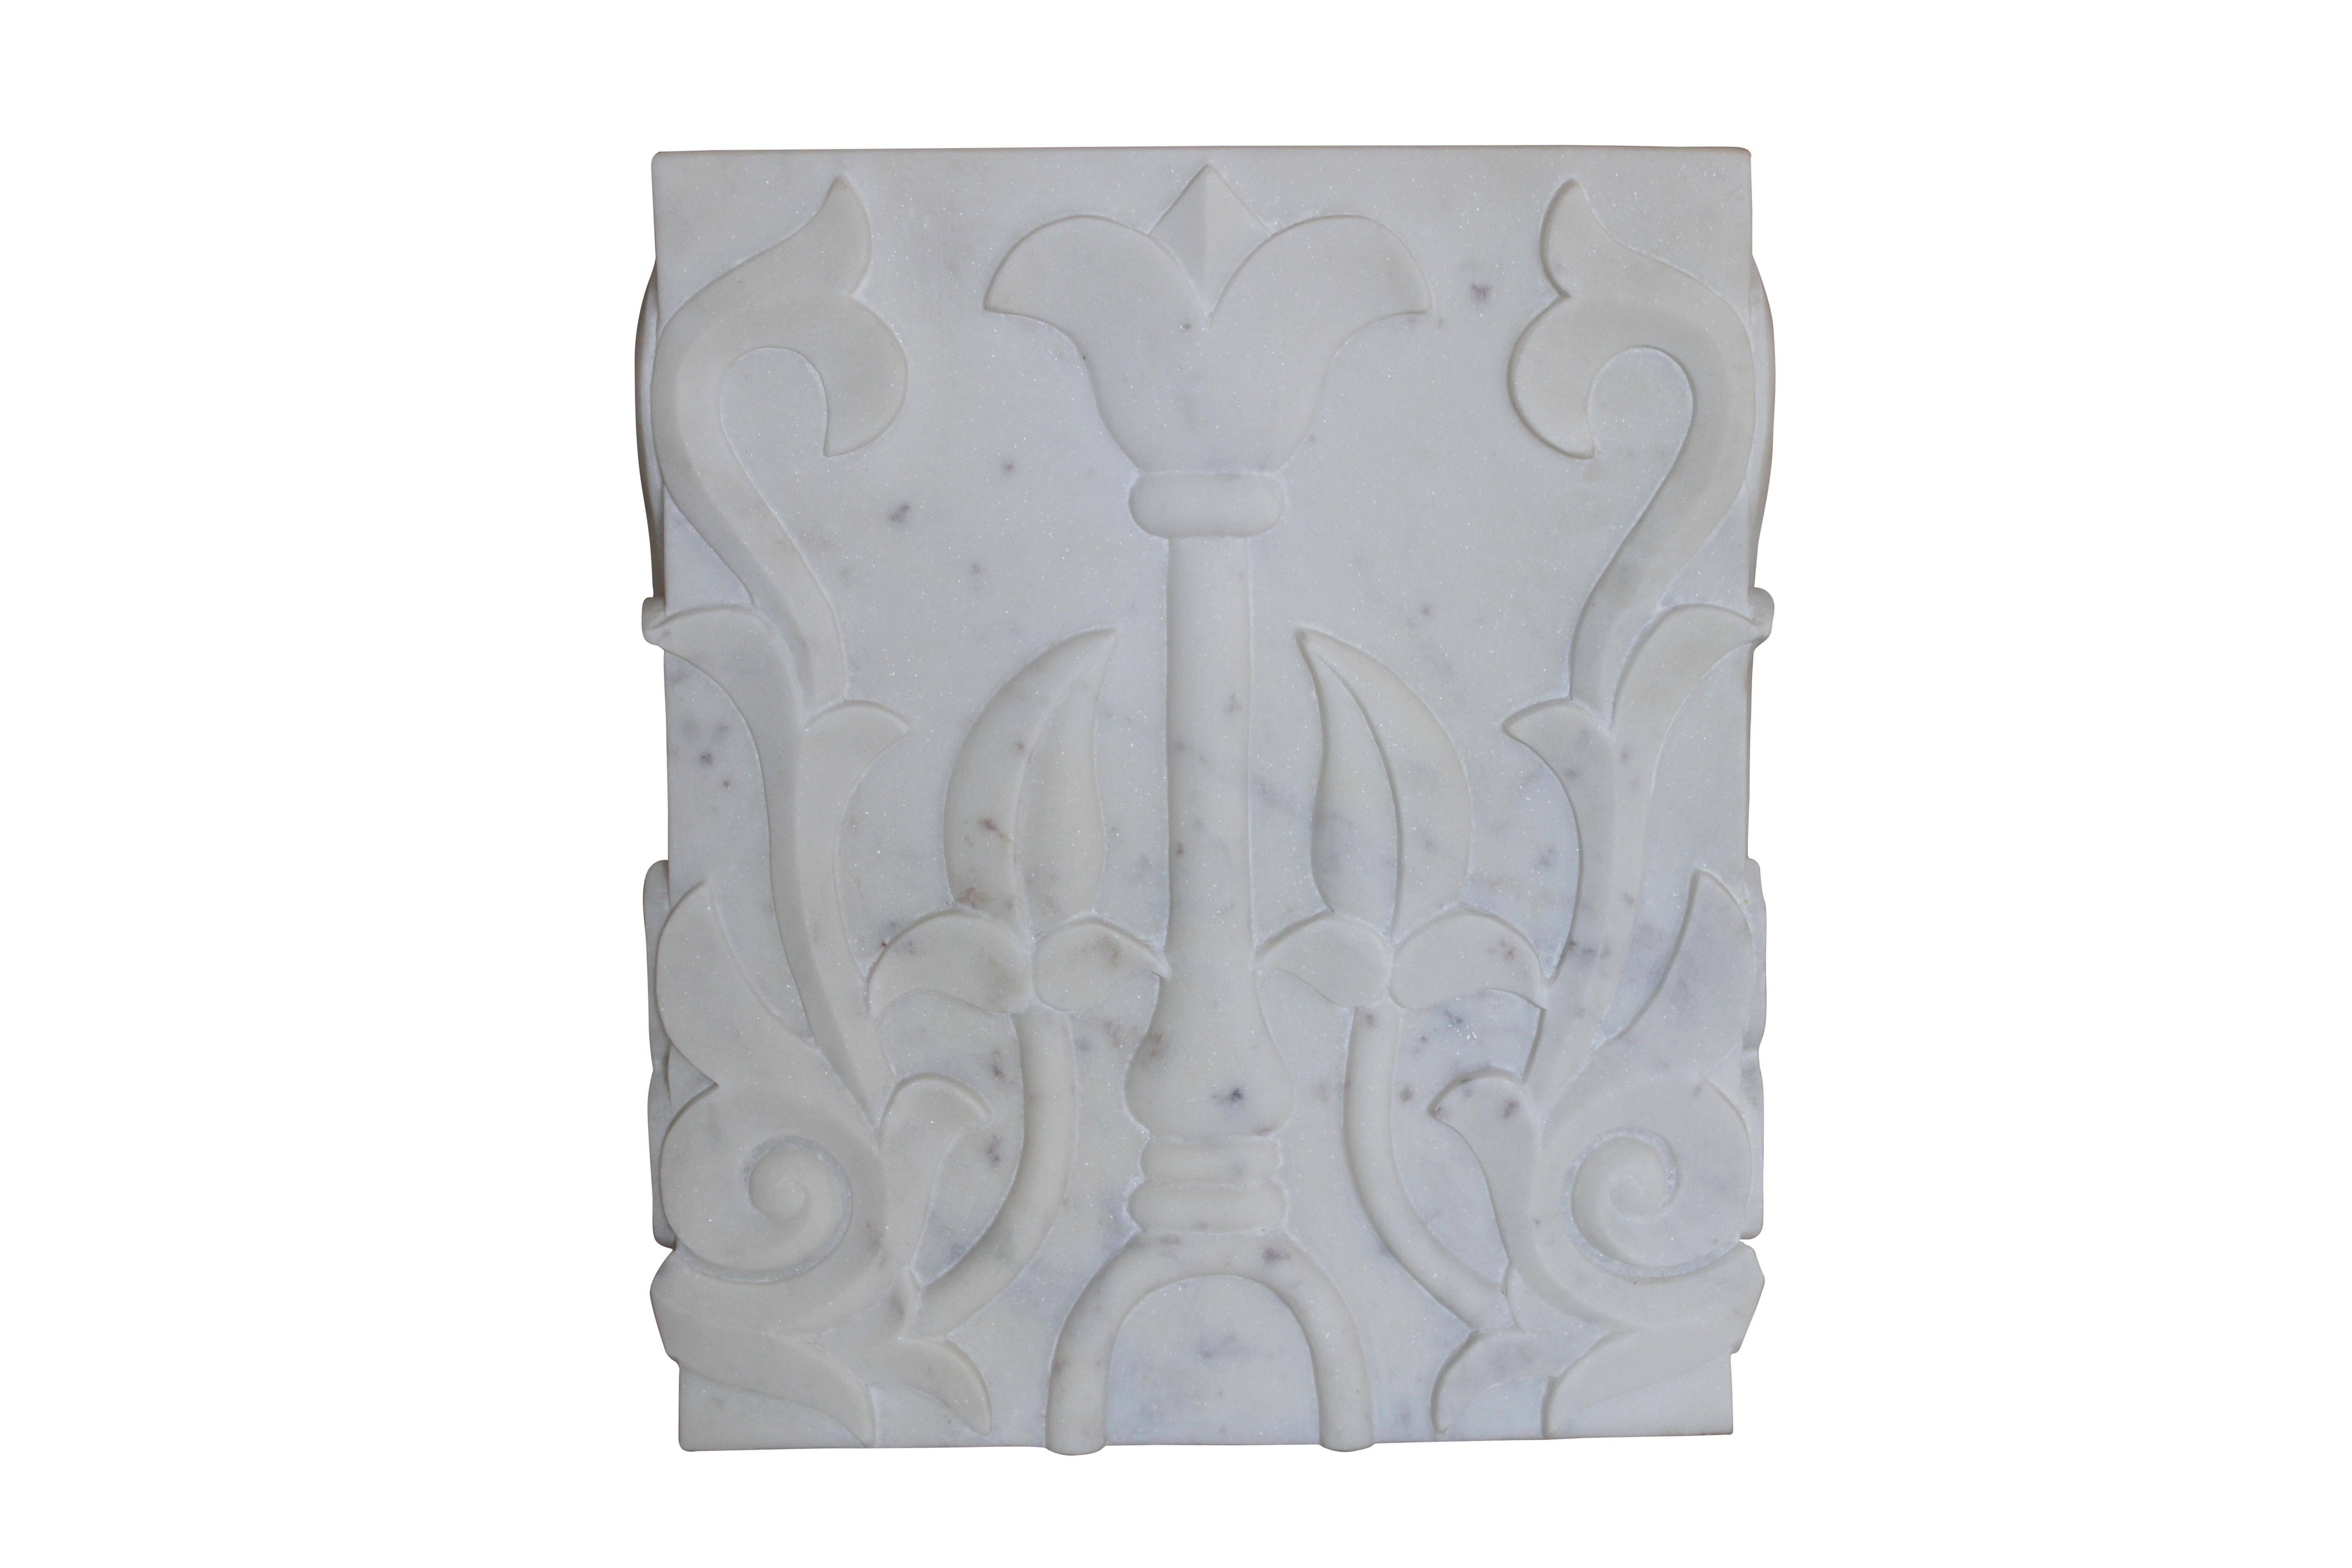 Ein handgeschnitzter, quadratischer Sockel aus weißem Marmor, der dem alten tibetischen Lotusmotiv nachempfunden ist.

Lotus geschnitzt Pedestal
Größe-12